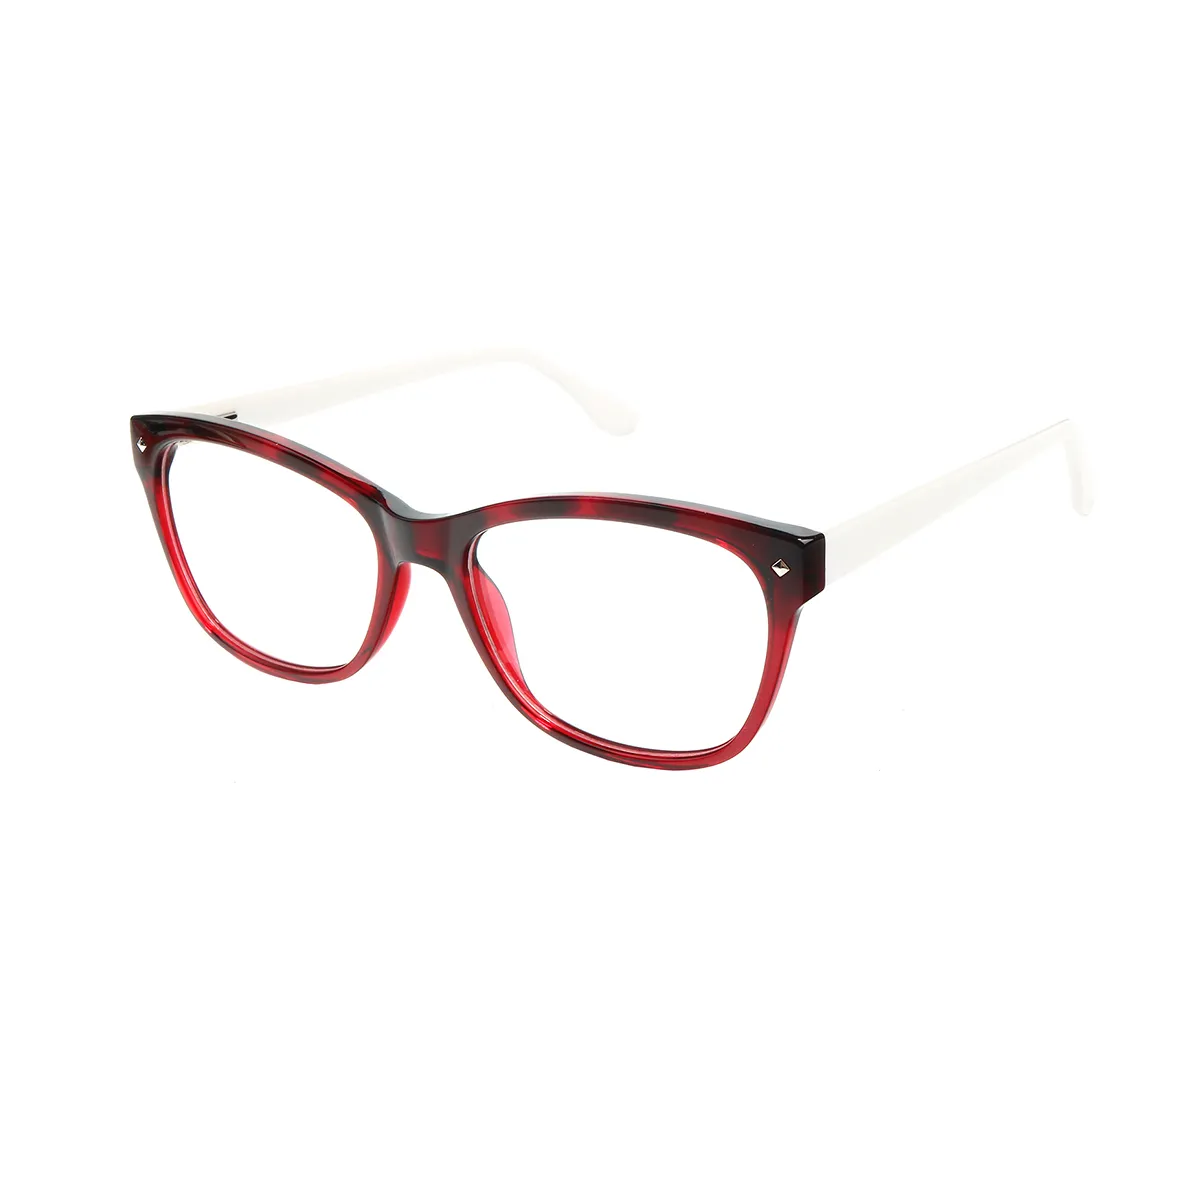 Jasmine - Square Red-Tortoiseshell Glasses for Women